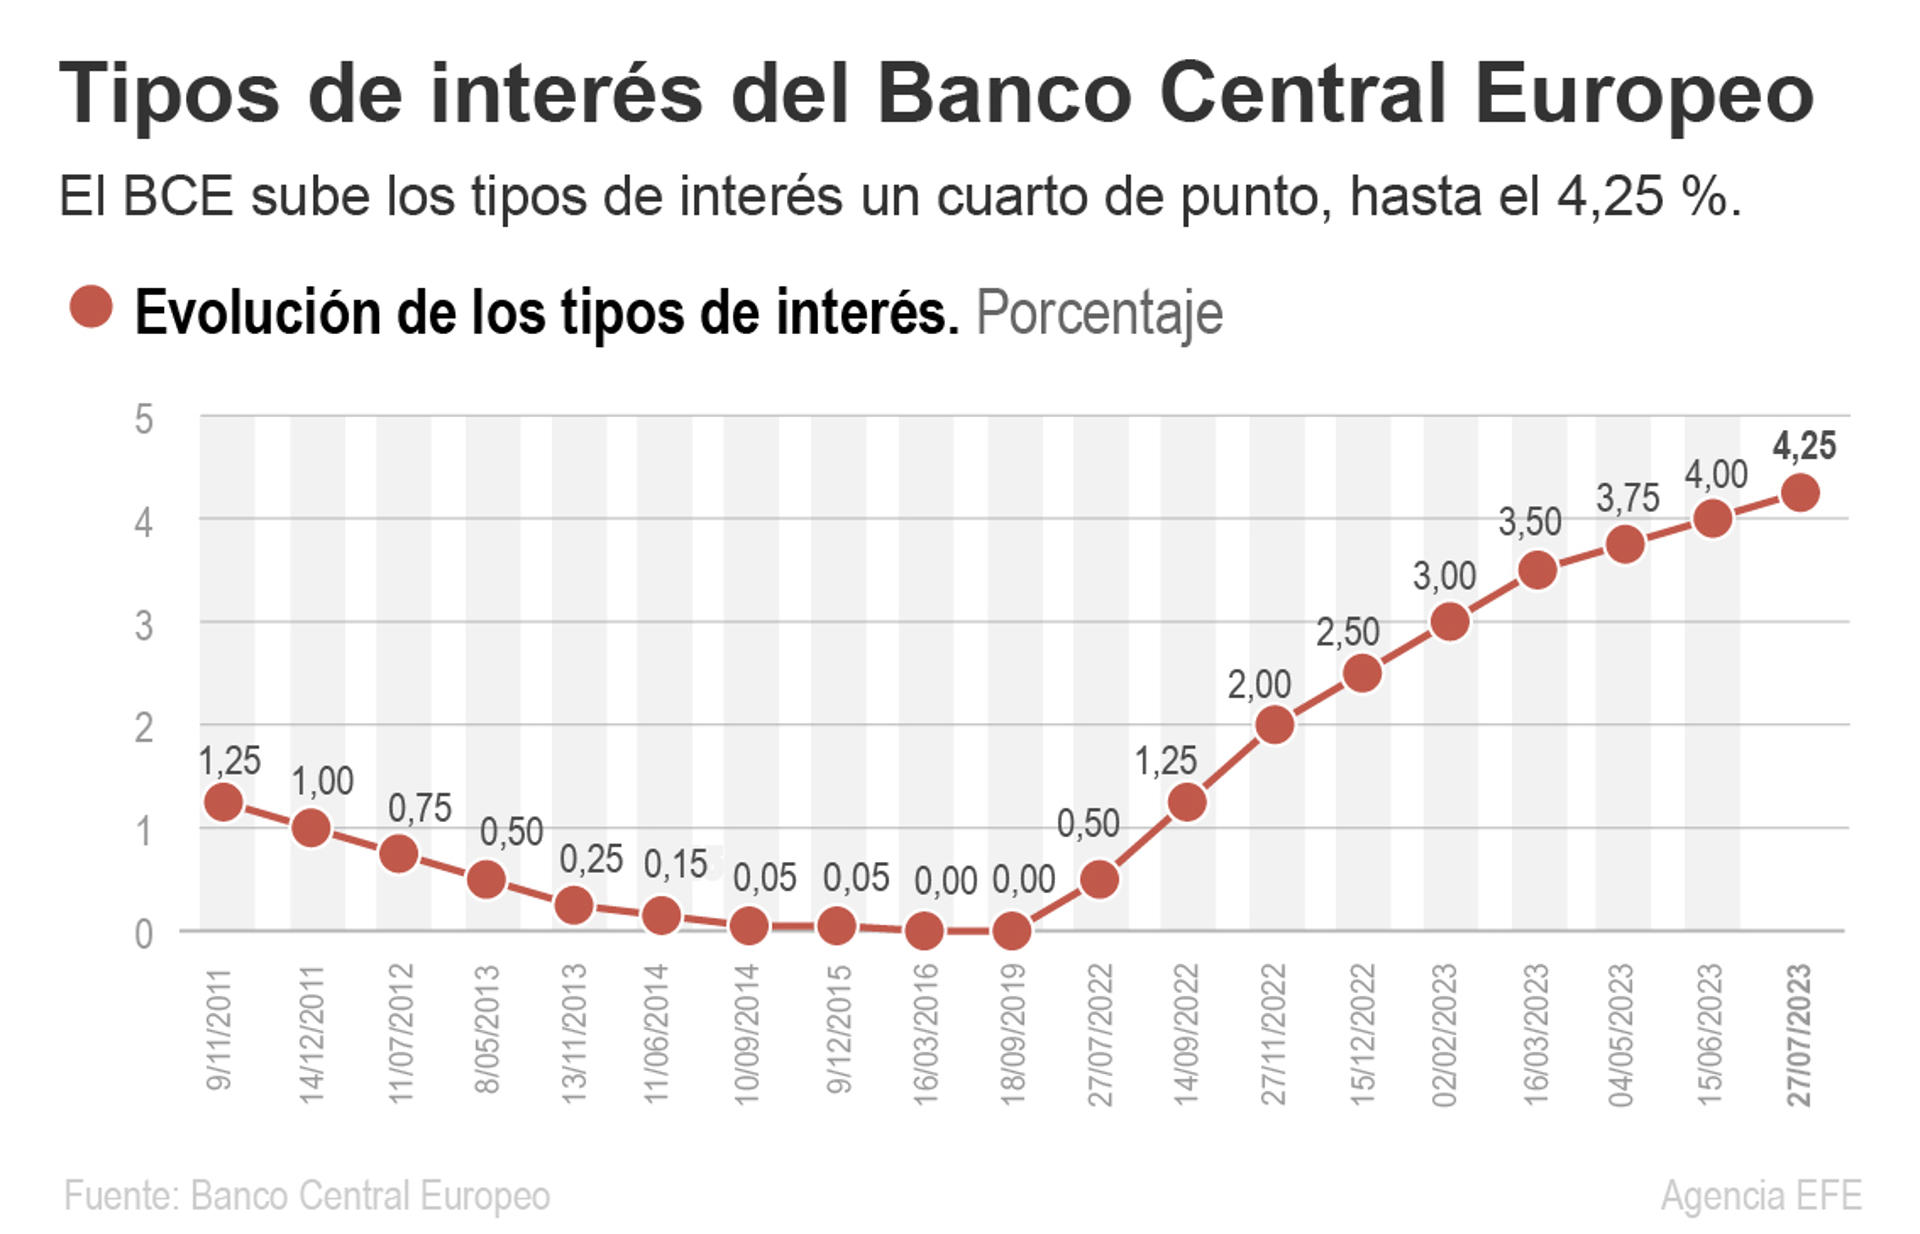 El BCE sube sus tipos de interés en un cuarto de punto, hasta el 4,25 %